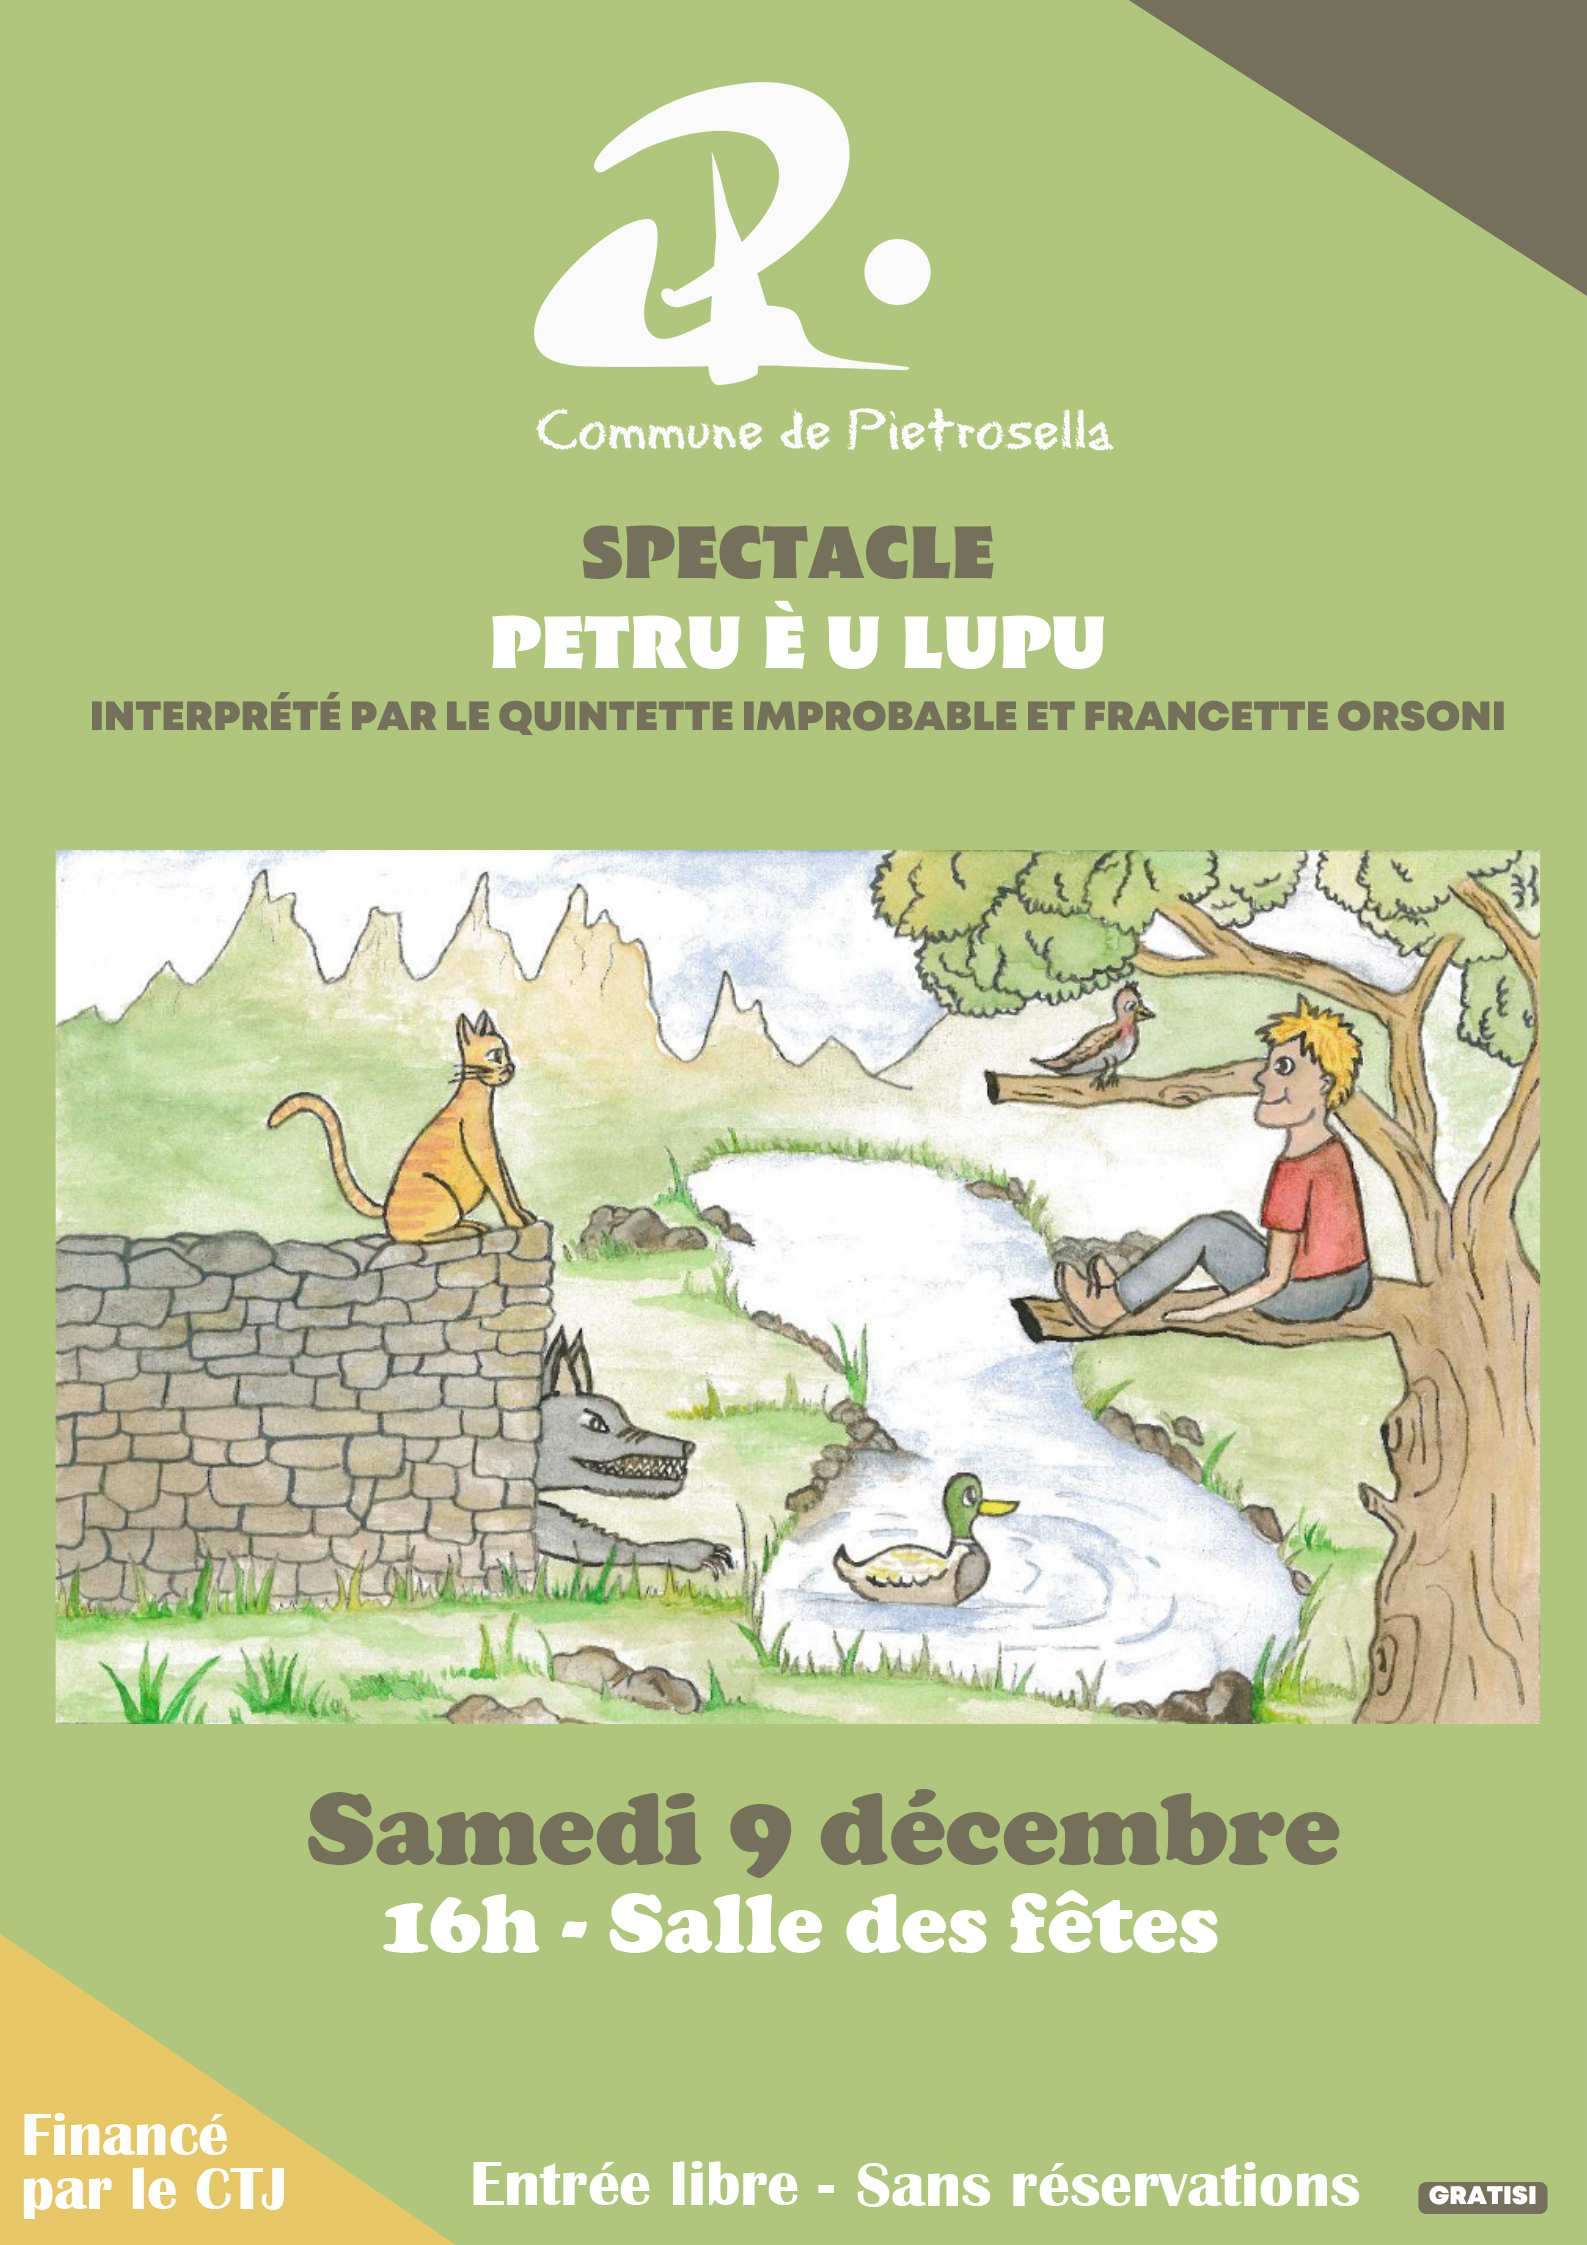 Conte musical bilingue "Petru e Lupu" avec le Conservatoire de musique d'Ajaccio